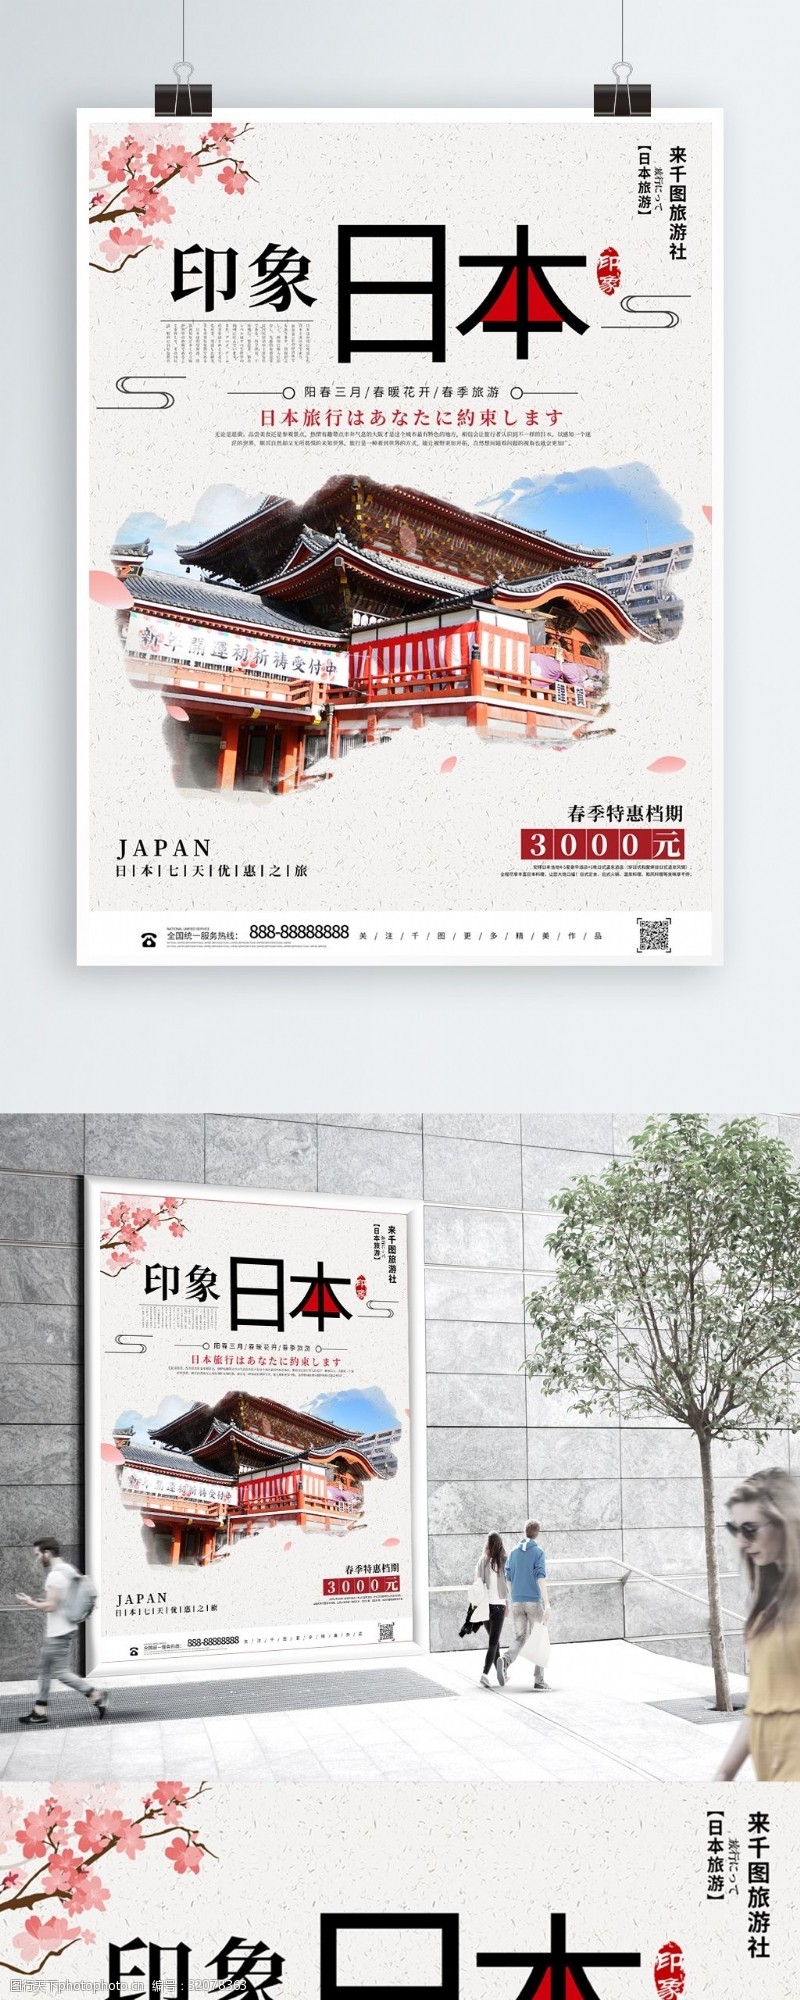 简约创意印象日本旅游宣传海报